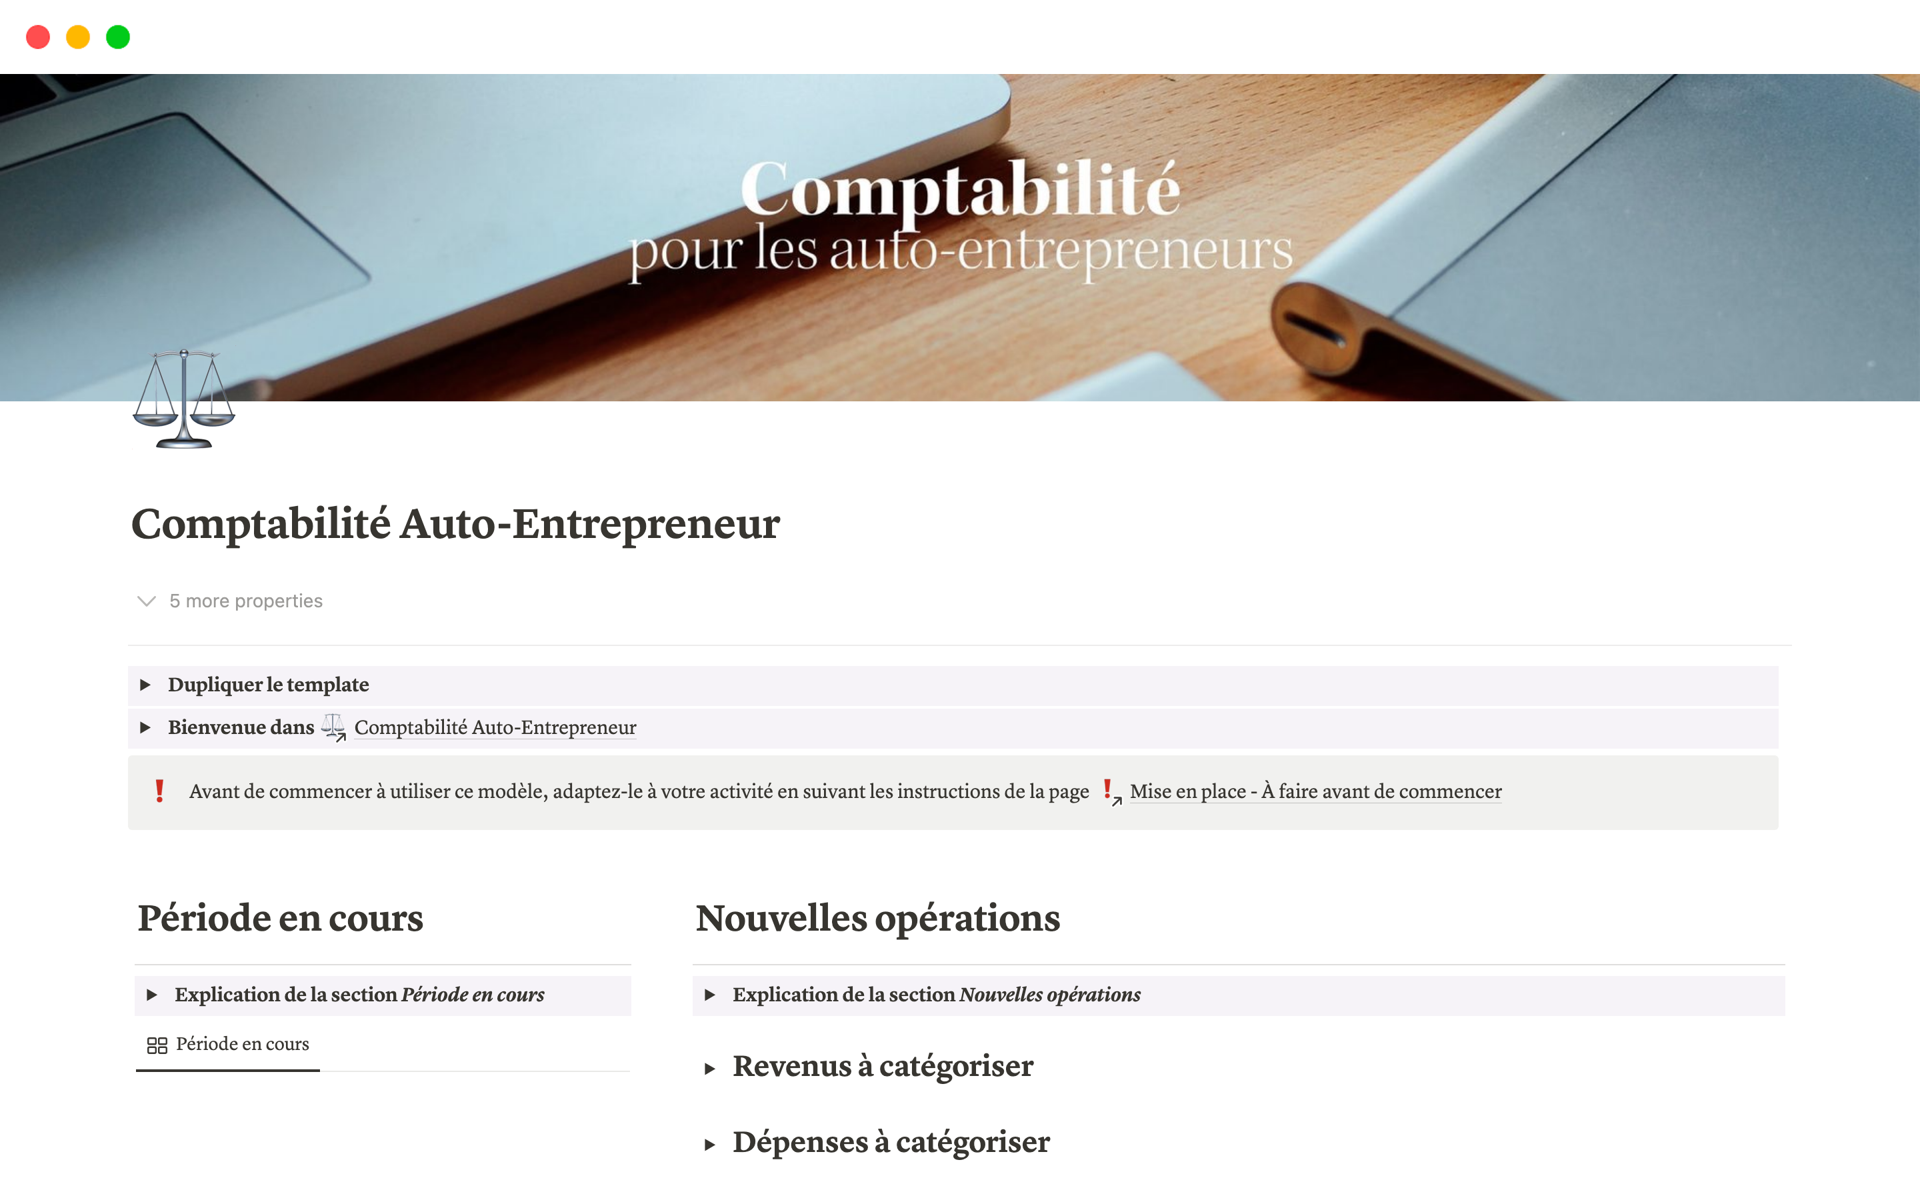 A template preview for Comptabilité Auto-Entrepreneur